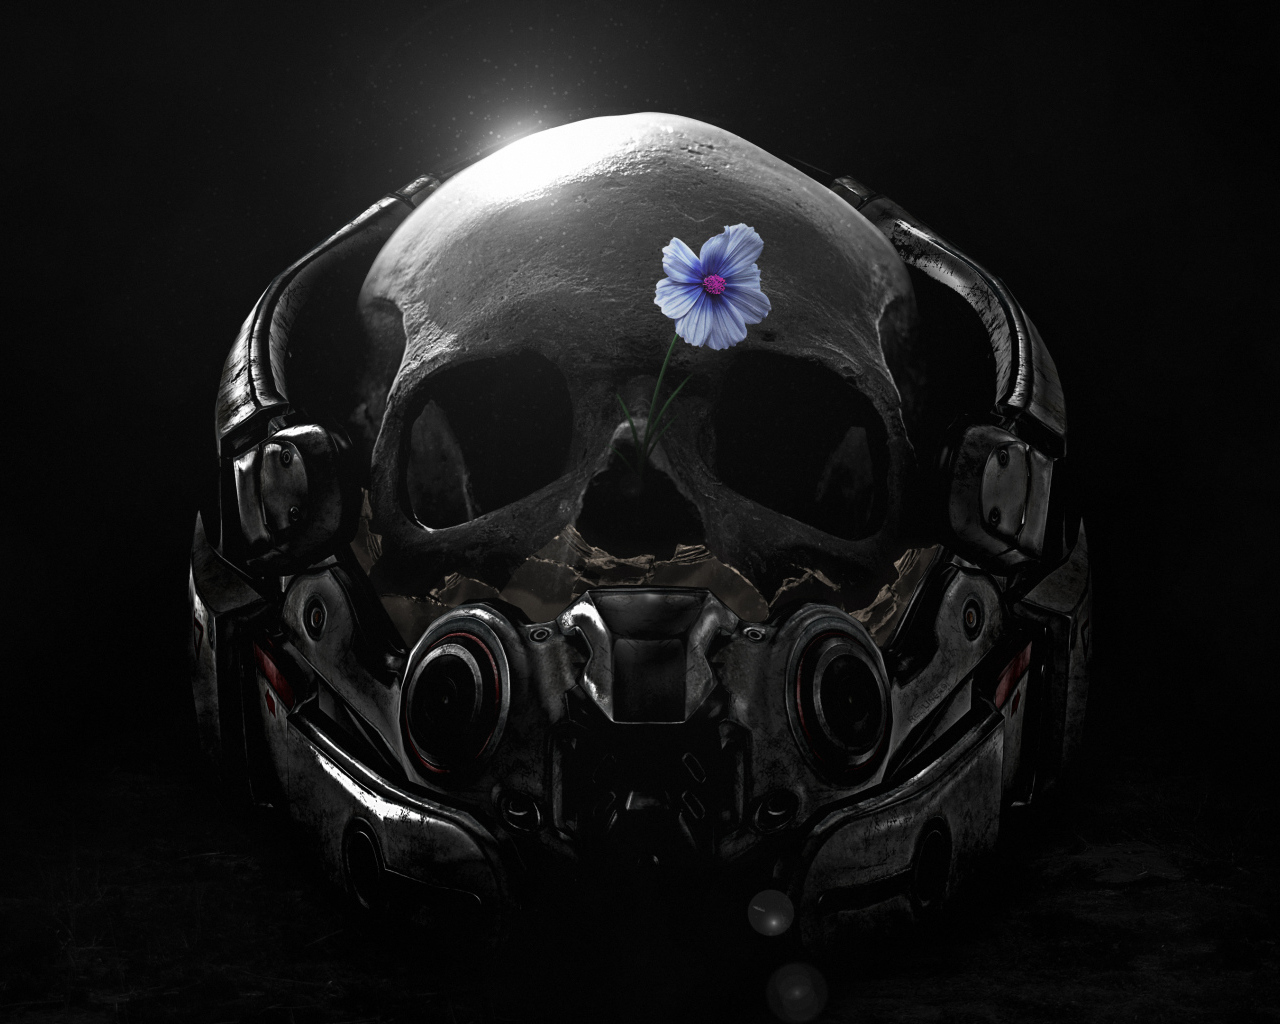 Череп в шлеме с голубым цветком, компьютерная игра  Mass Effect. Andromeda